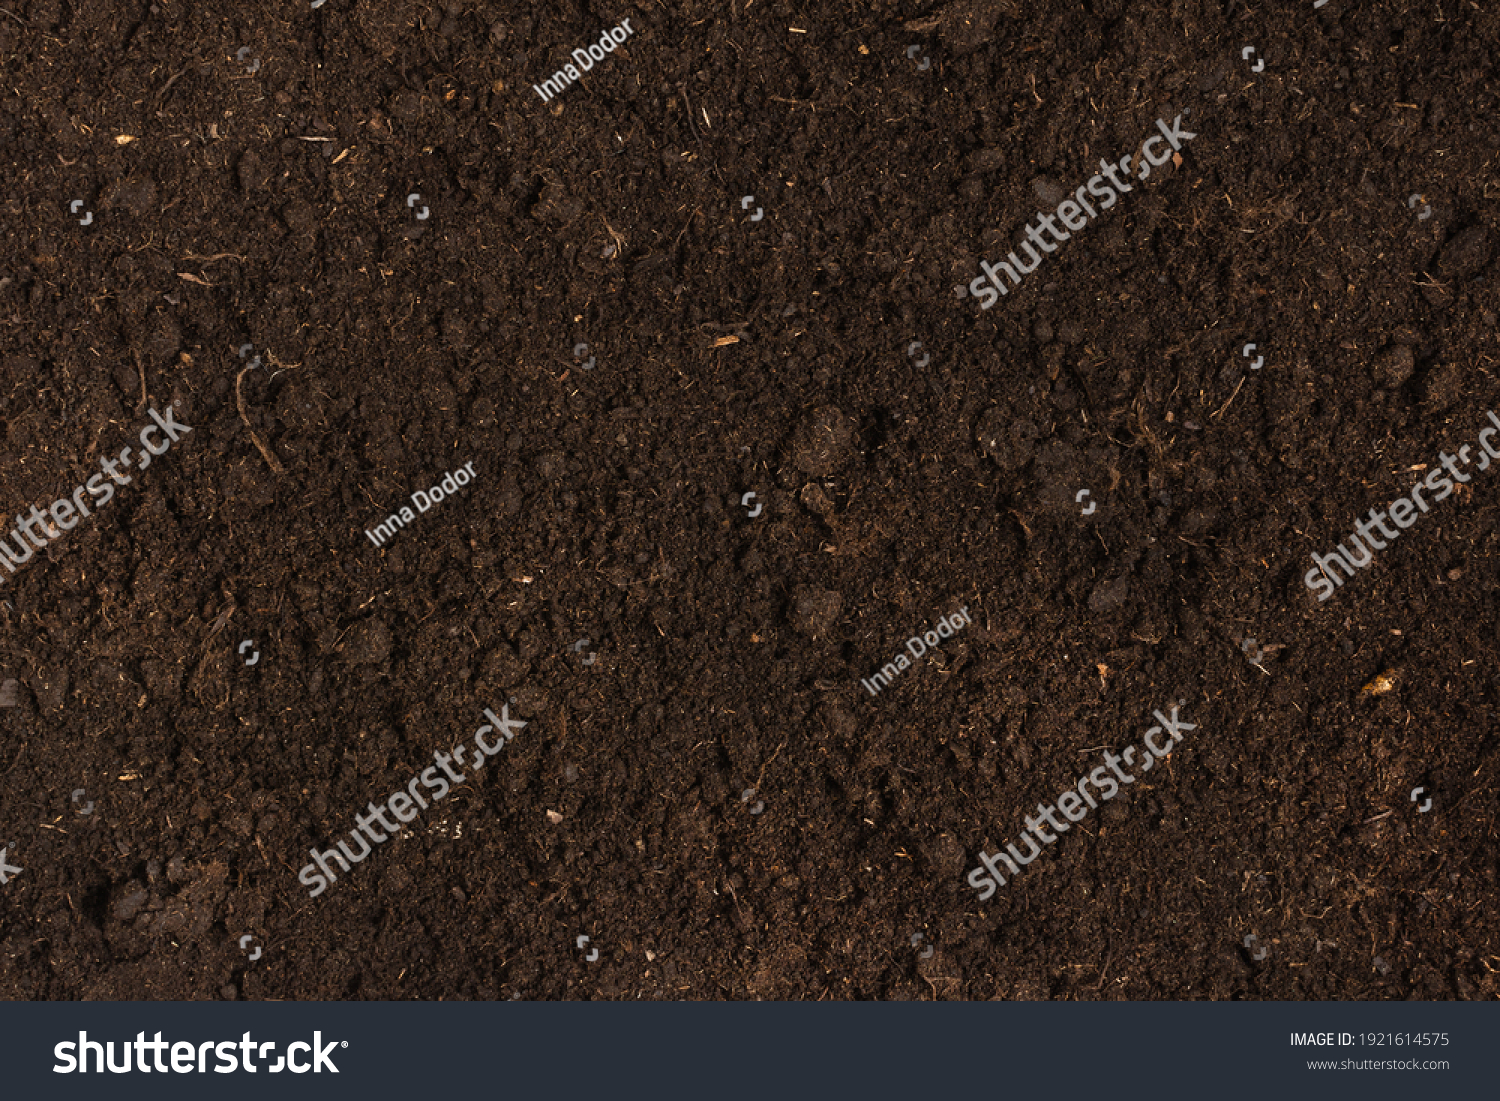 Texture of fertile soil top view. Spring gardening season concept. #1921614575